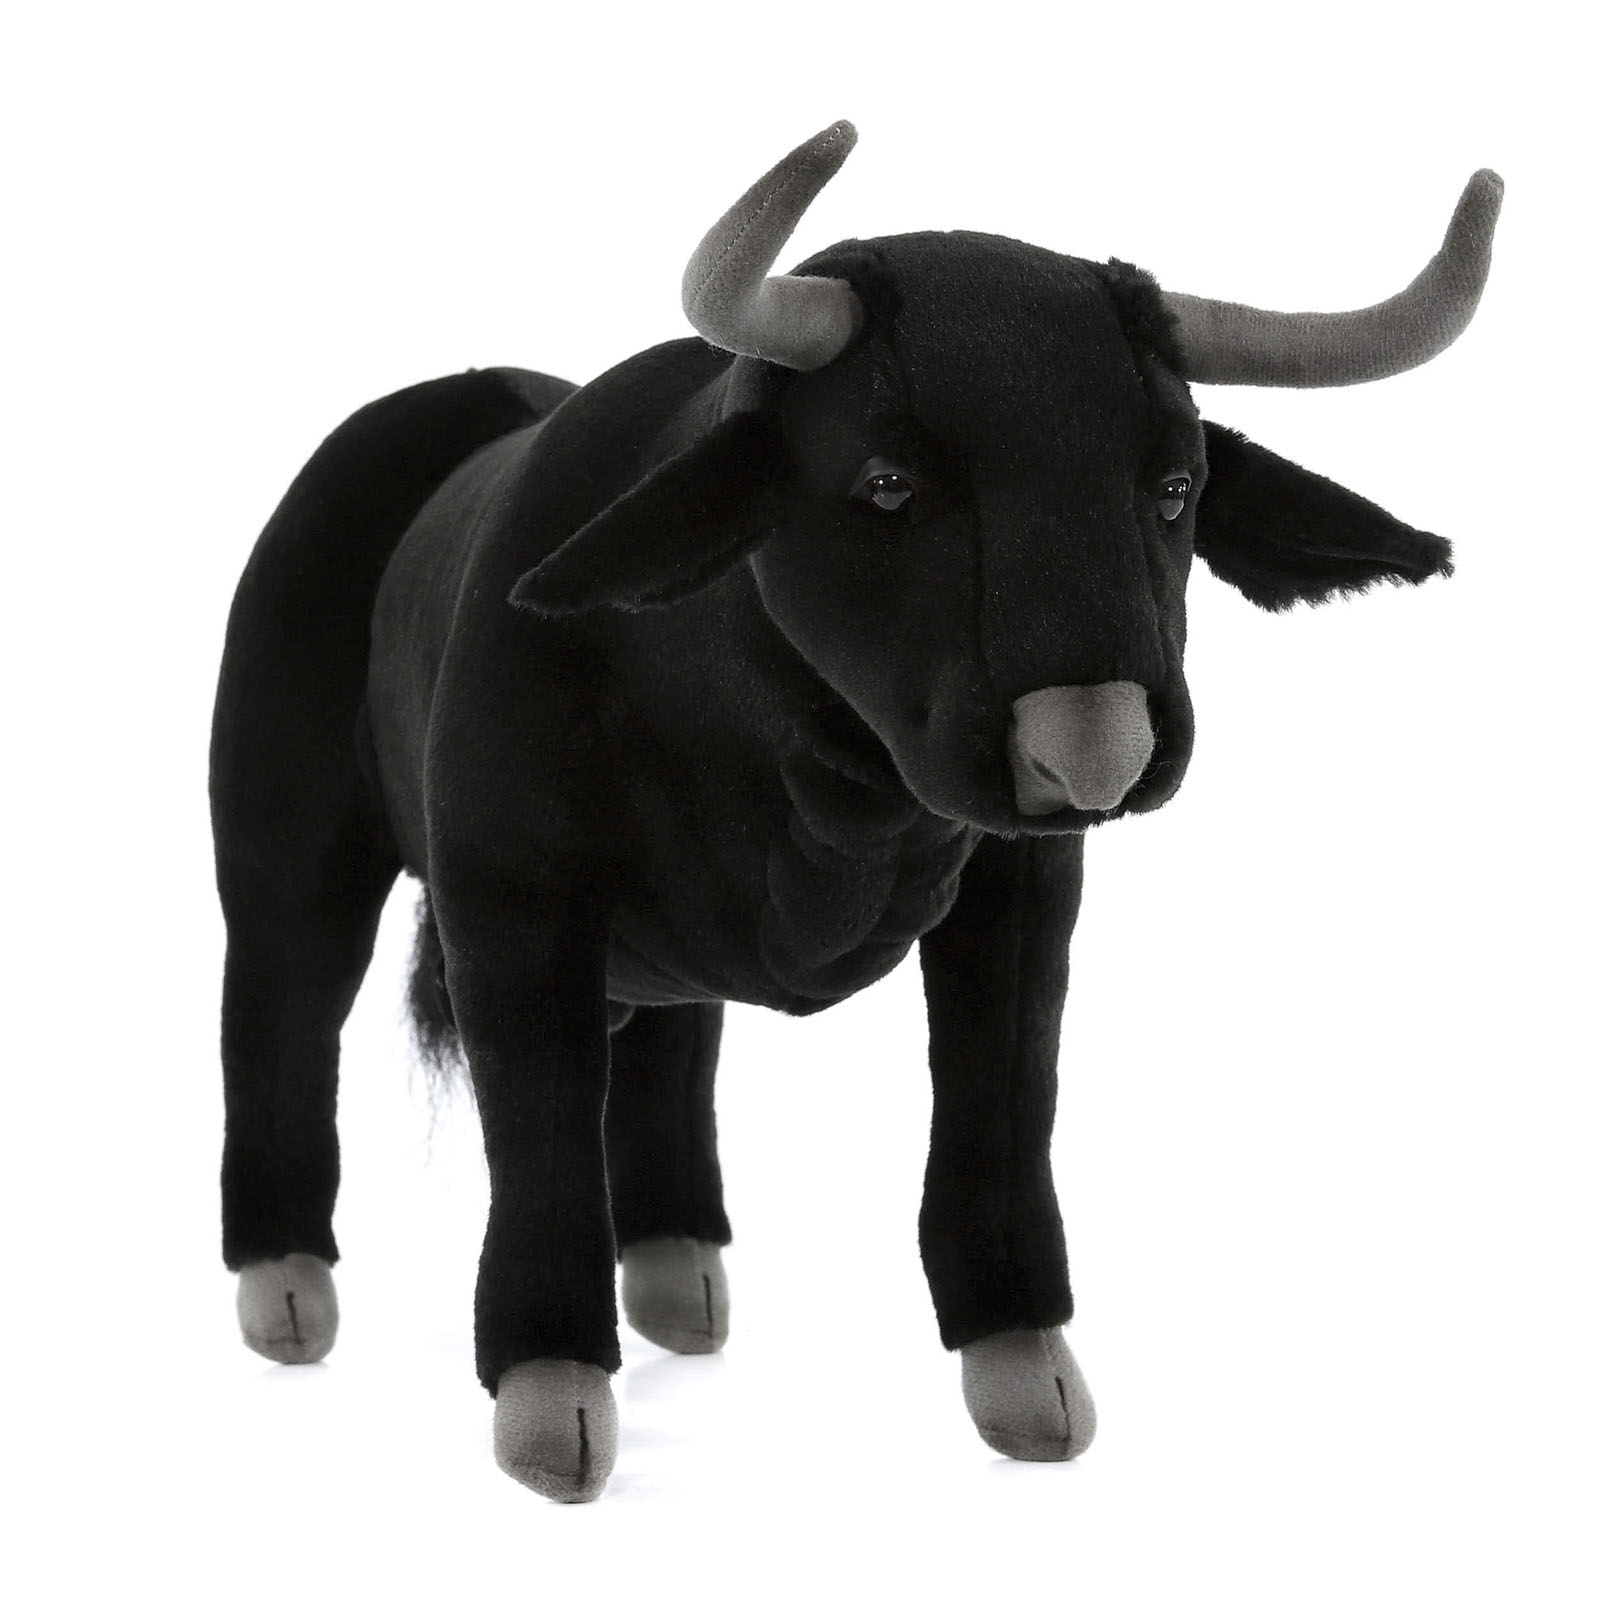 Реалистичная мягкая игрушка Hansa Creation Испанский бык, 40 см мягкая игрушка hansa белек 29 см